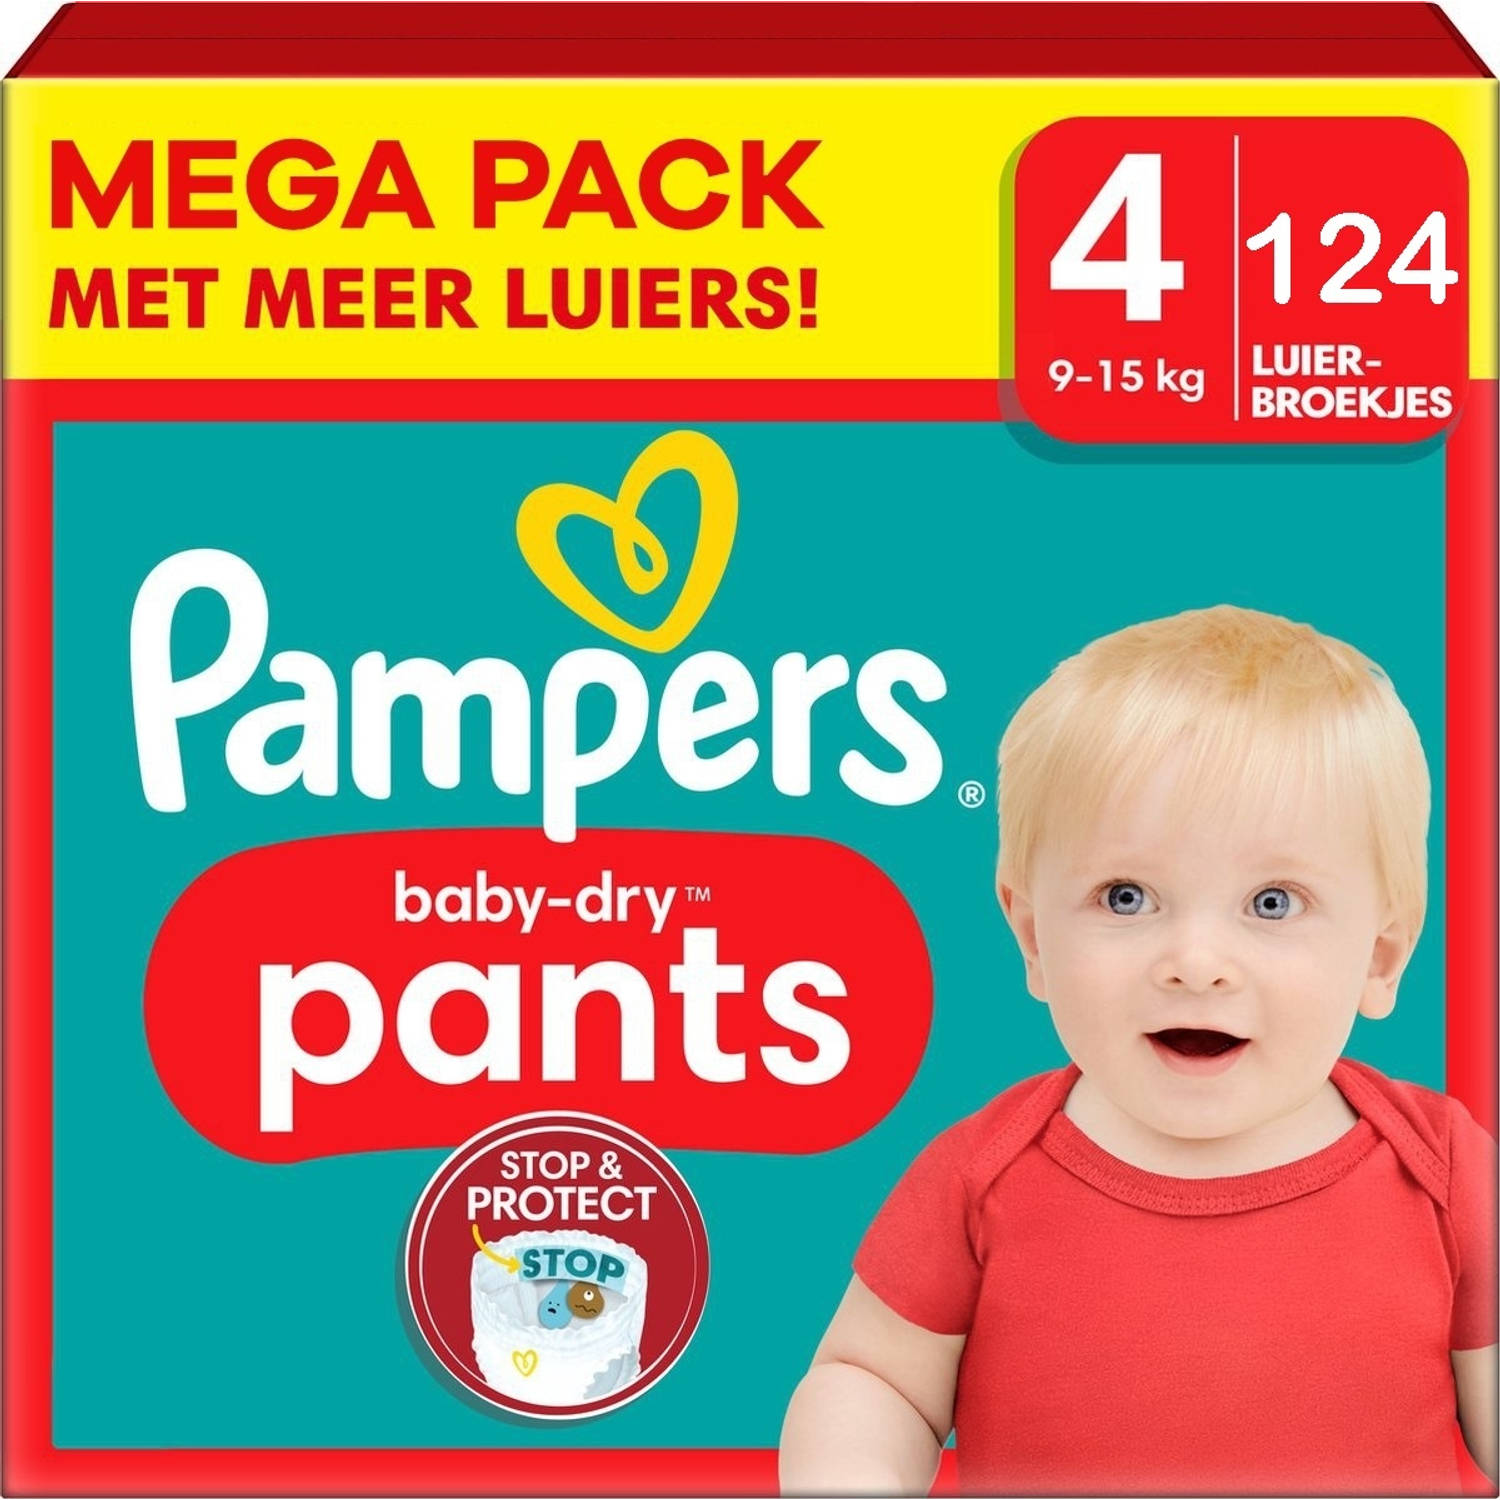 Pampers Baby Dry Pants Maat 4 Megapack 124 stuks 9-15KG